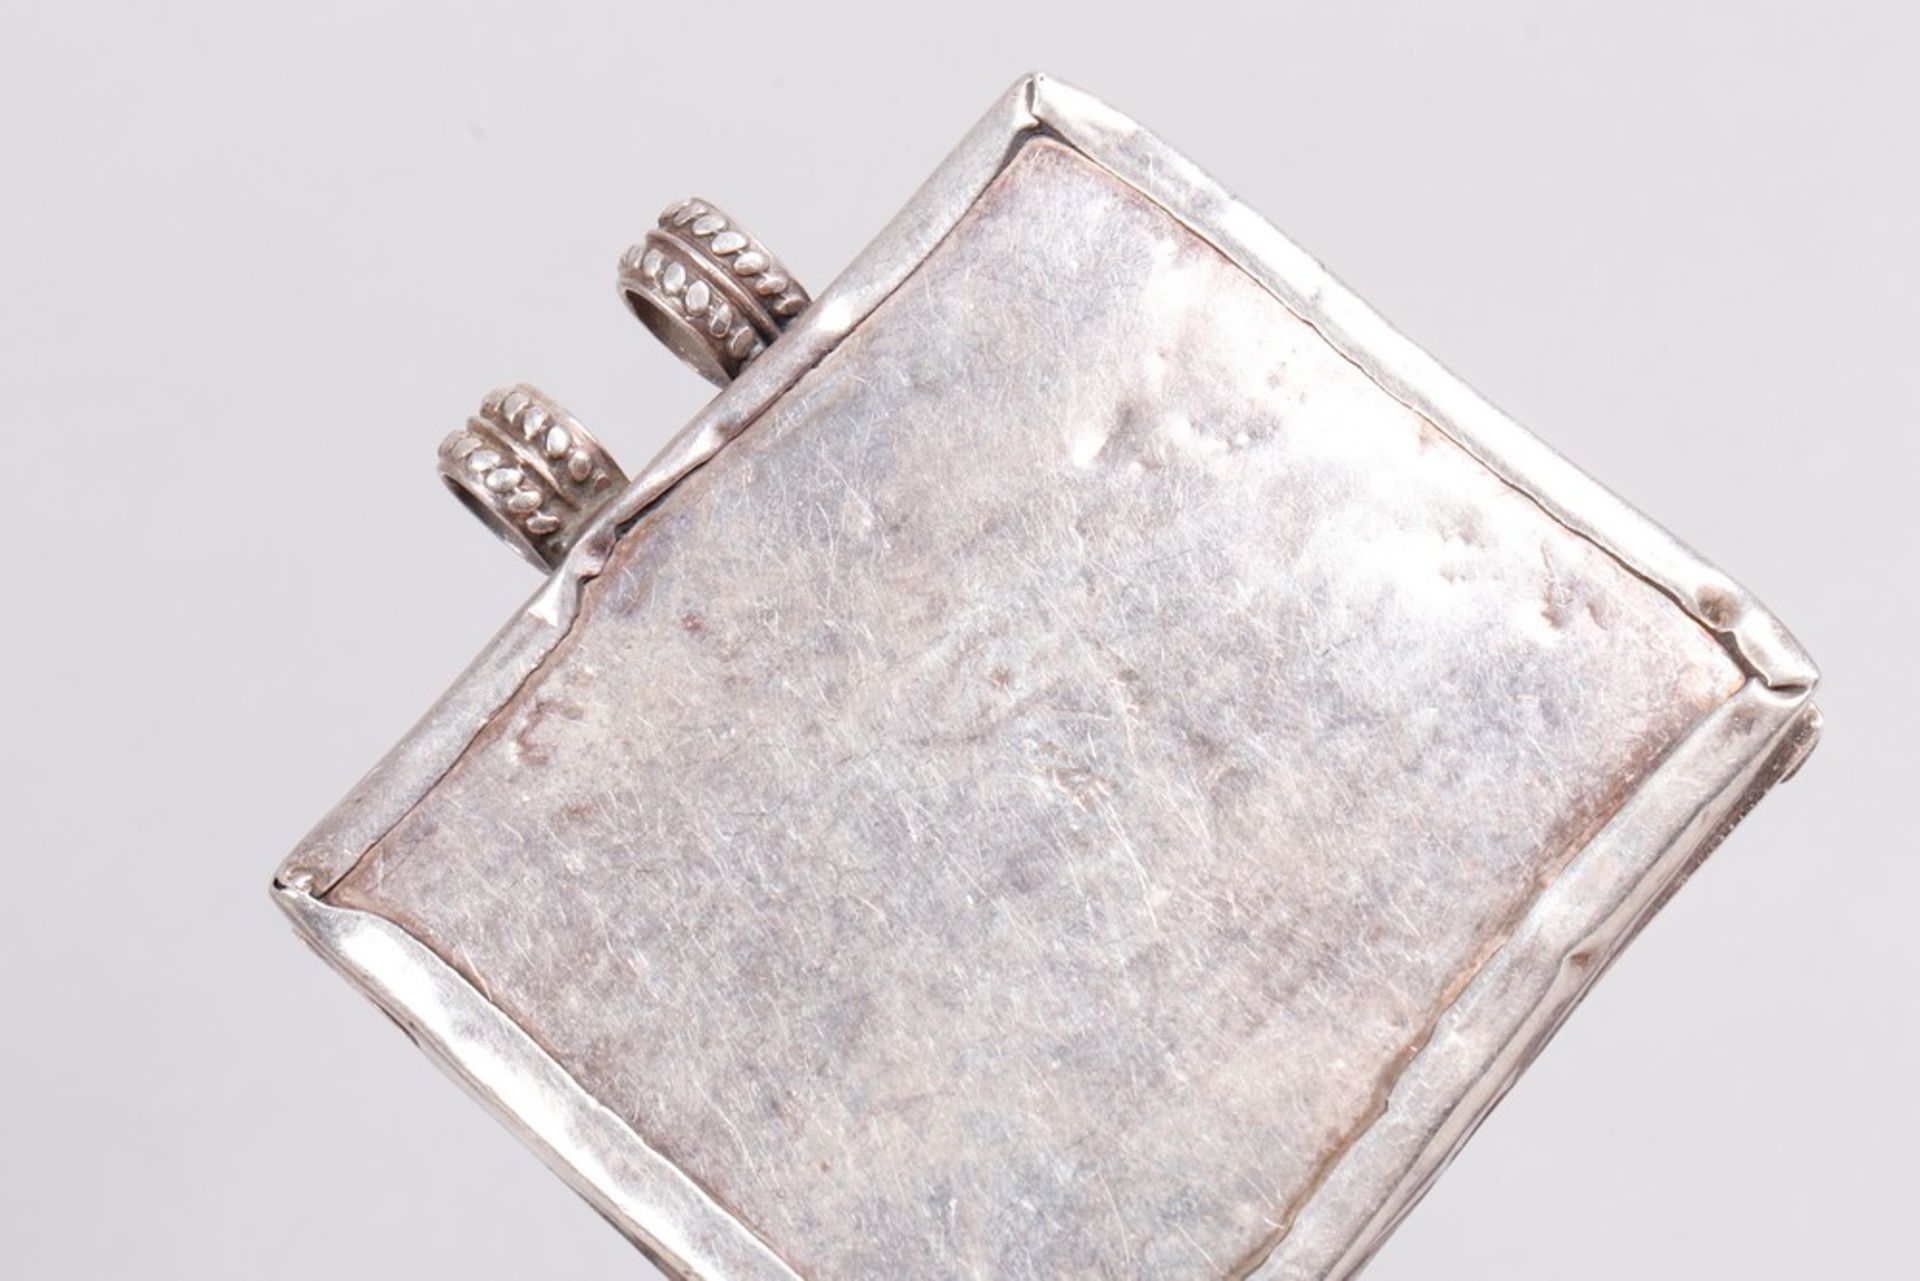 Anhänger mit Miniatur, 925er Silber, indo-persischer Raum, 1. Hälfte 20. Jh.  - Bild 3 aus 3